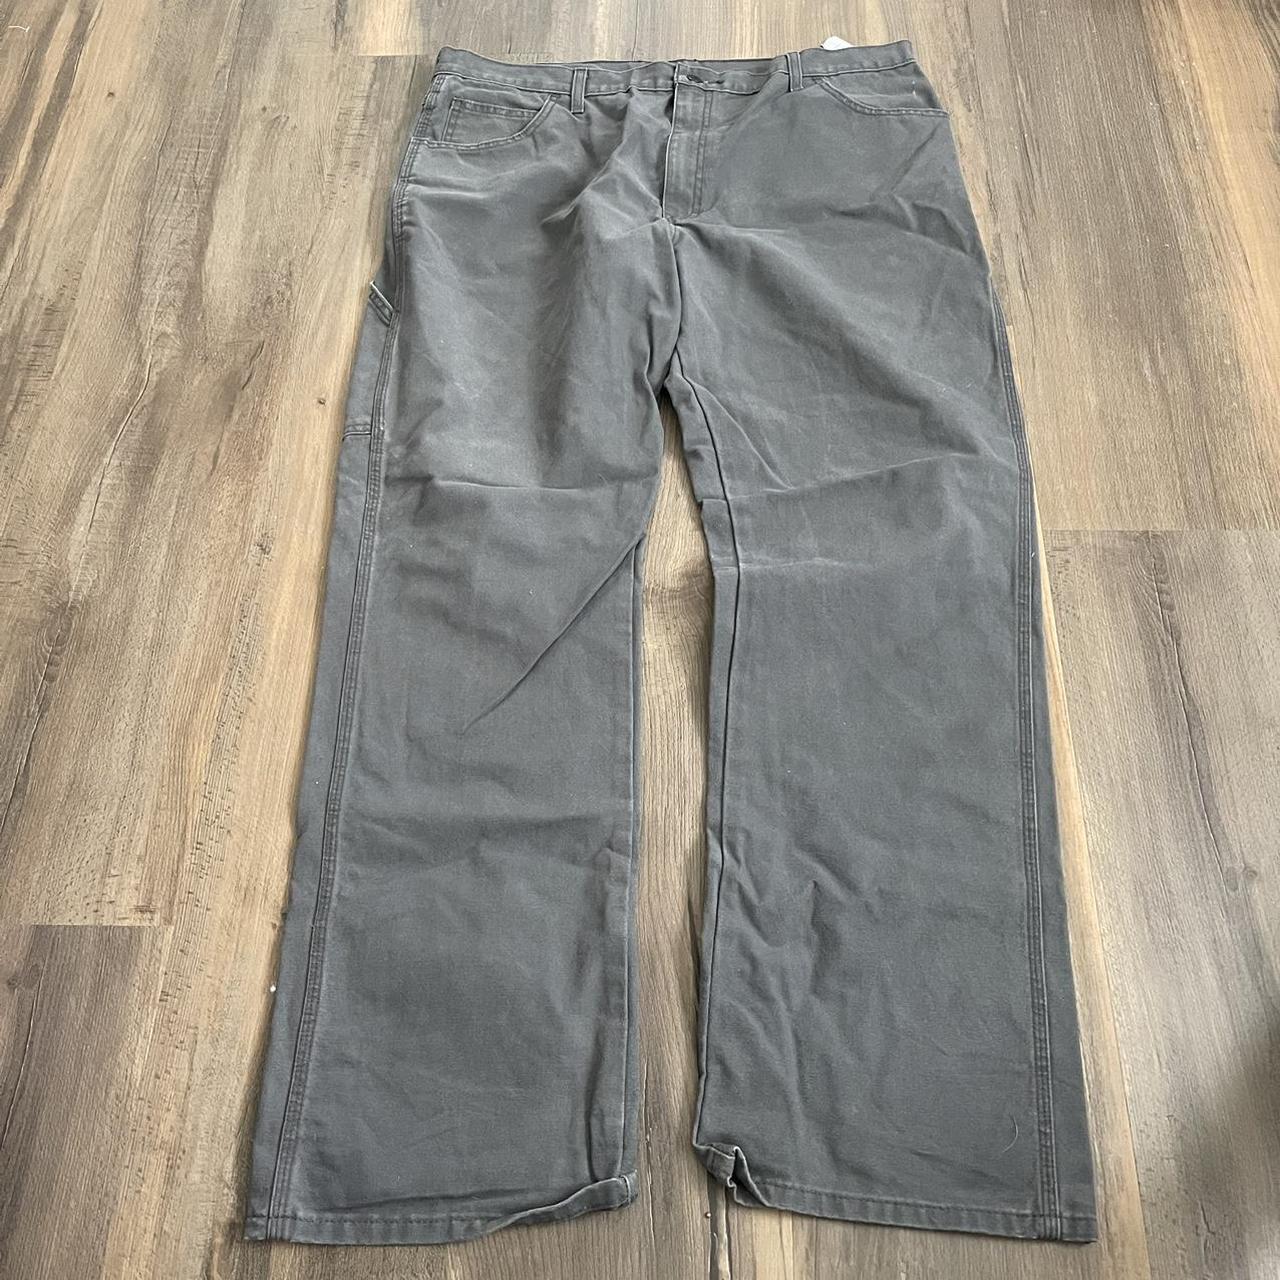 Dickies great pants Great condition Men’s 38 x... - Depop